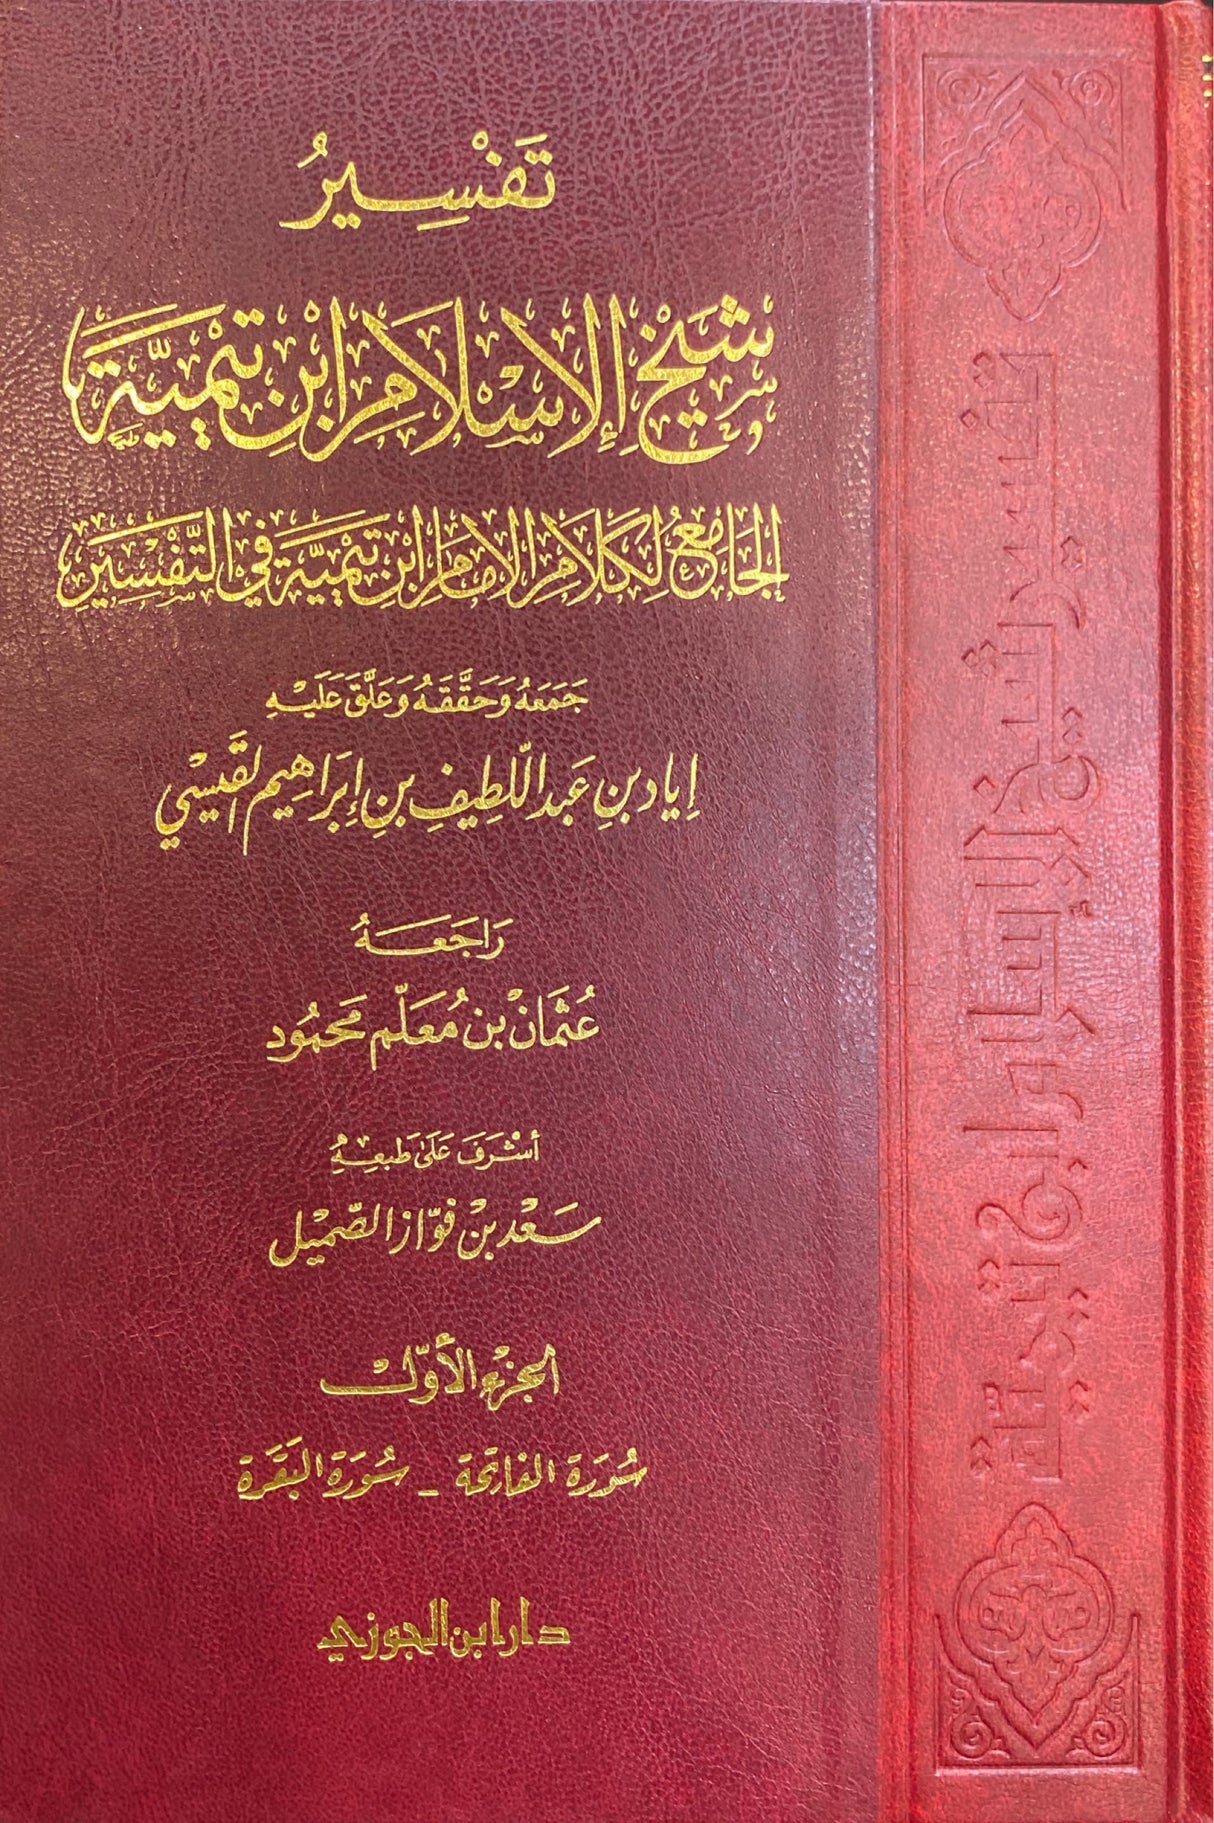 تفسير شيخ الاسلام ابن تيمية 1/ 7   Tafsir Sheikhul Islam Ibnu Taymiyyah (7 Volume Set)